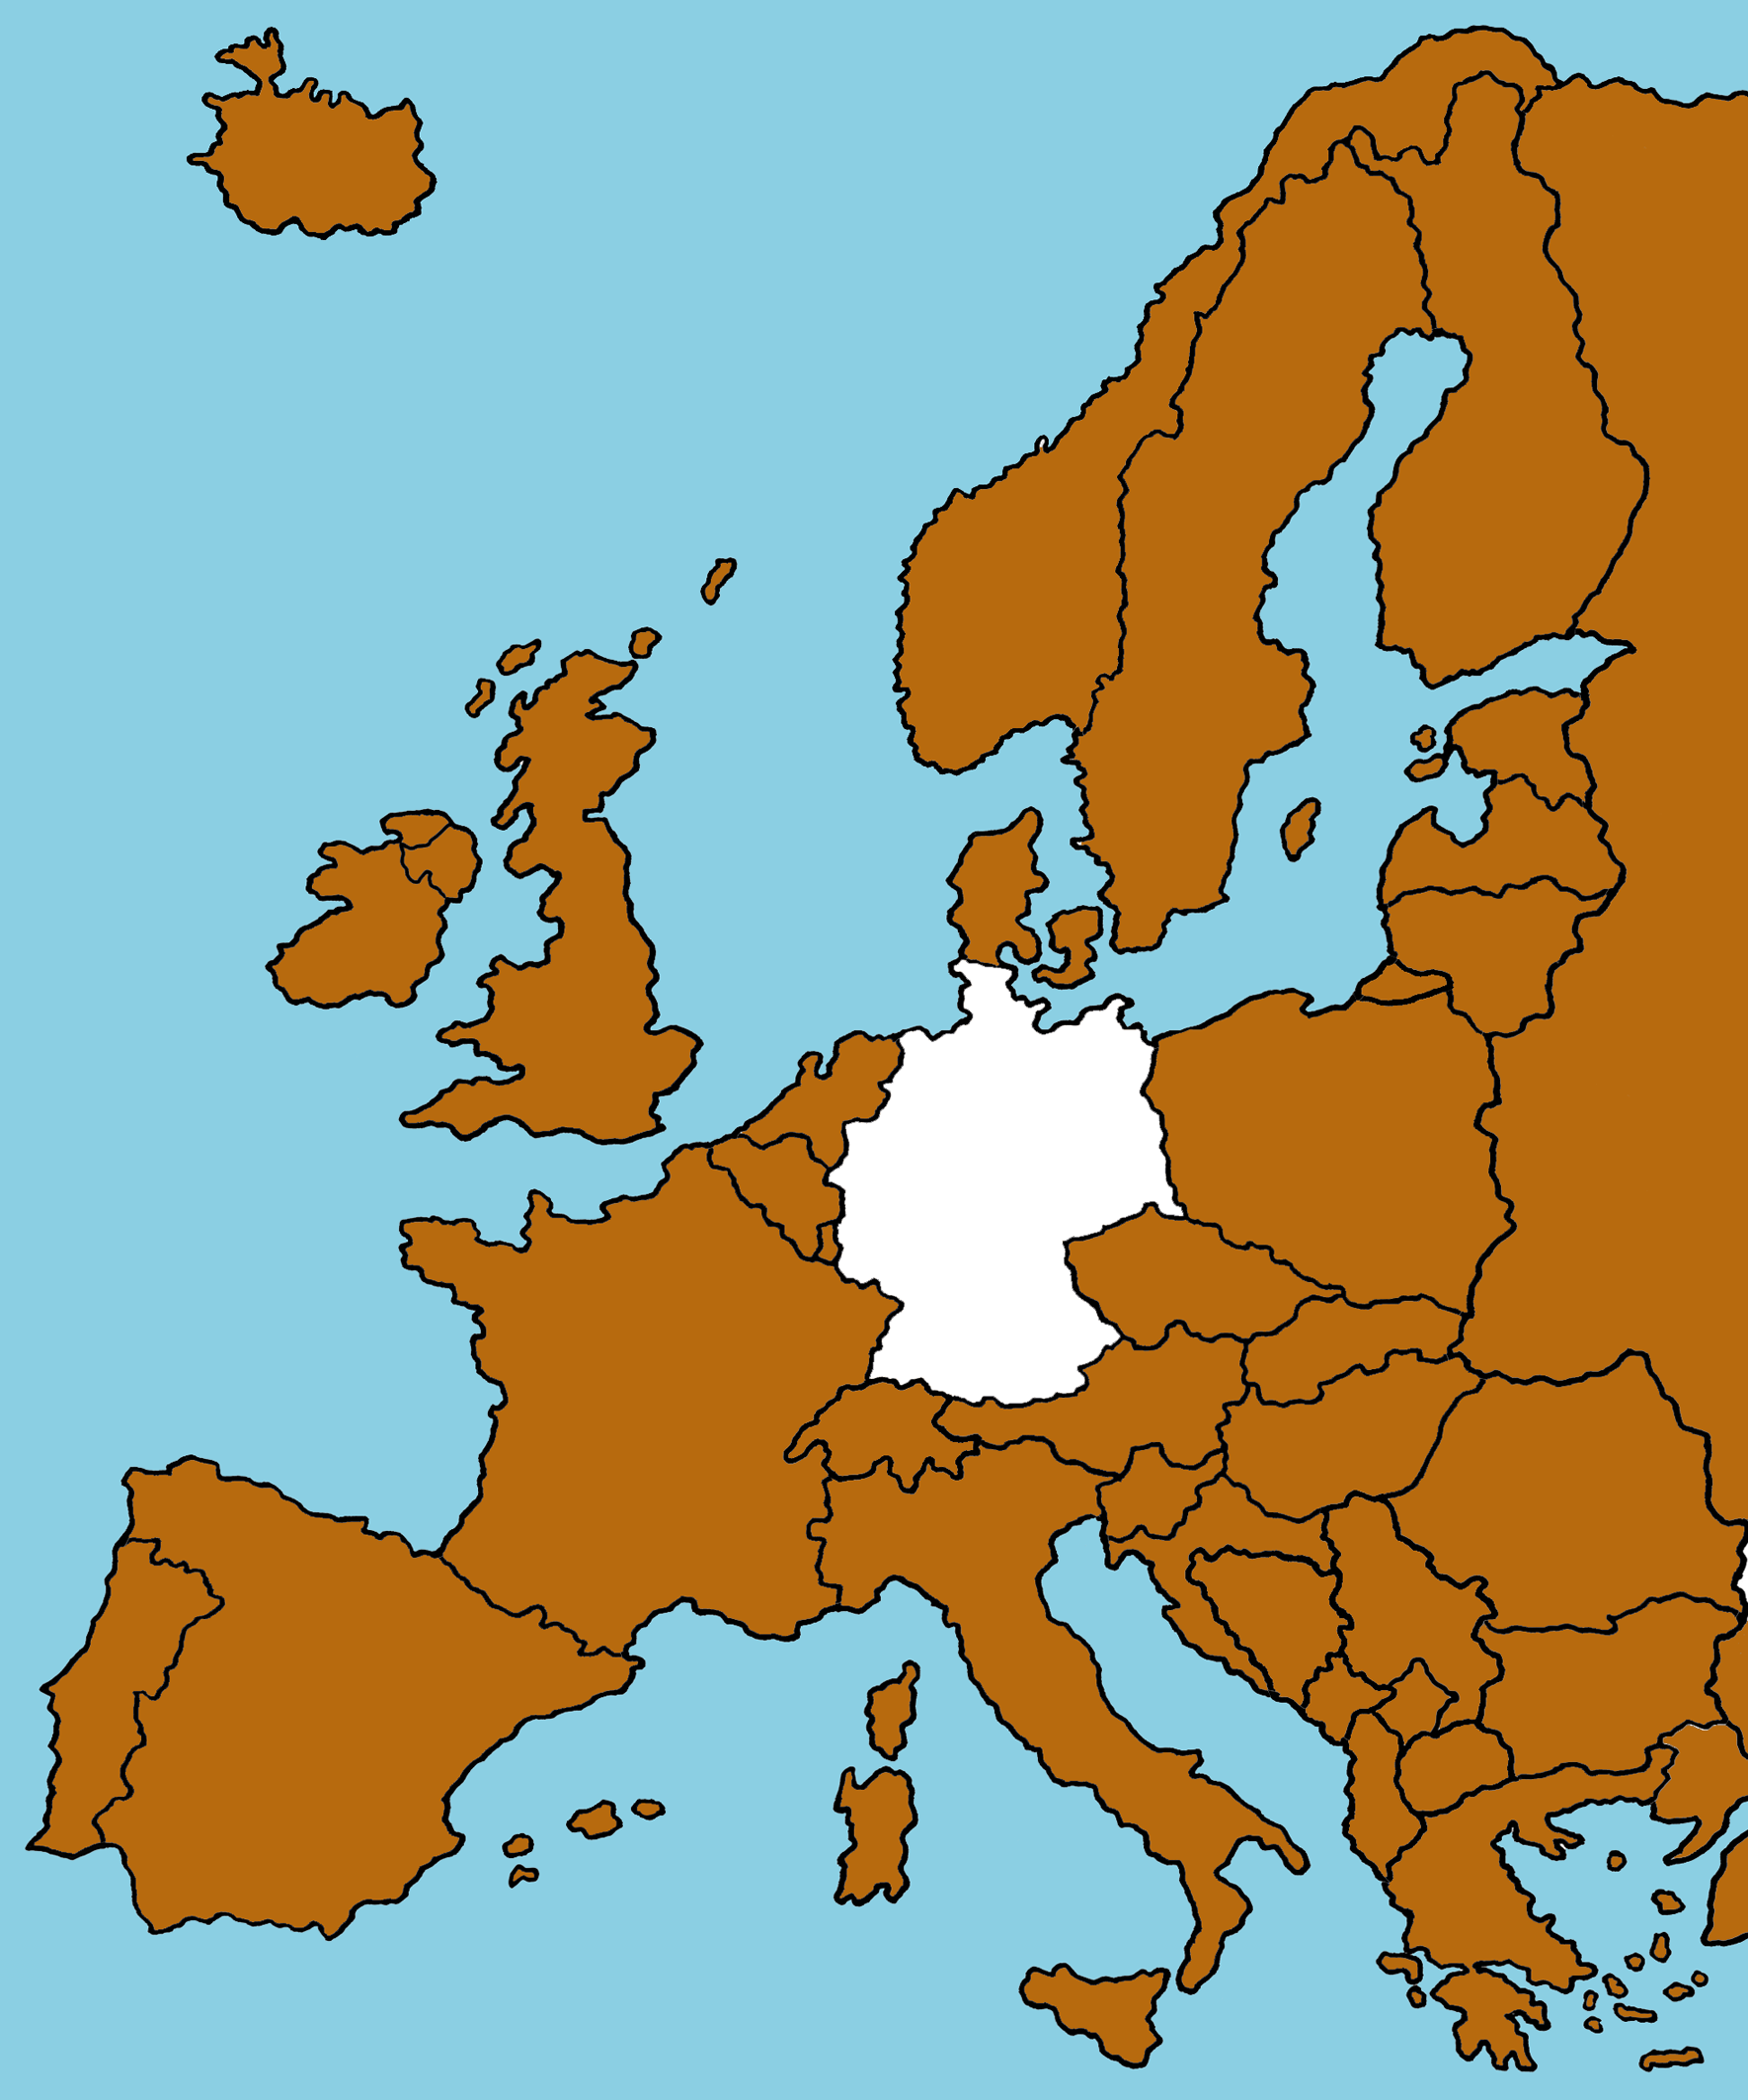 Leichte Sprache Bild: Eine Karte von Europa, Deutschland ist weiß eingefärbt, die übrigen Länder ocker